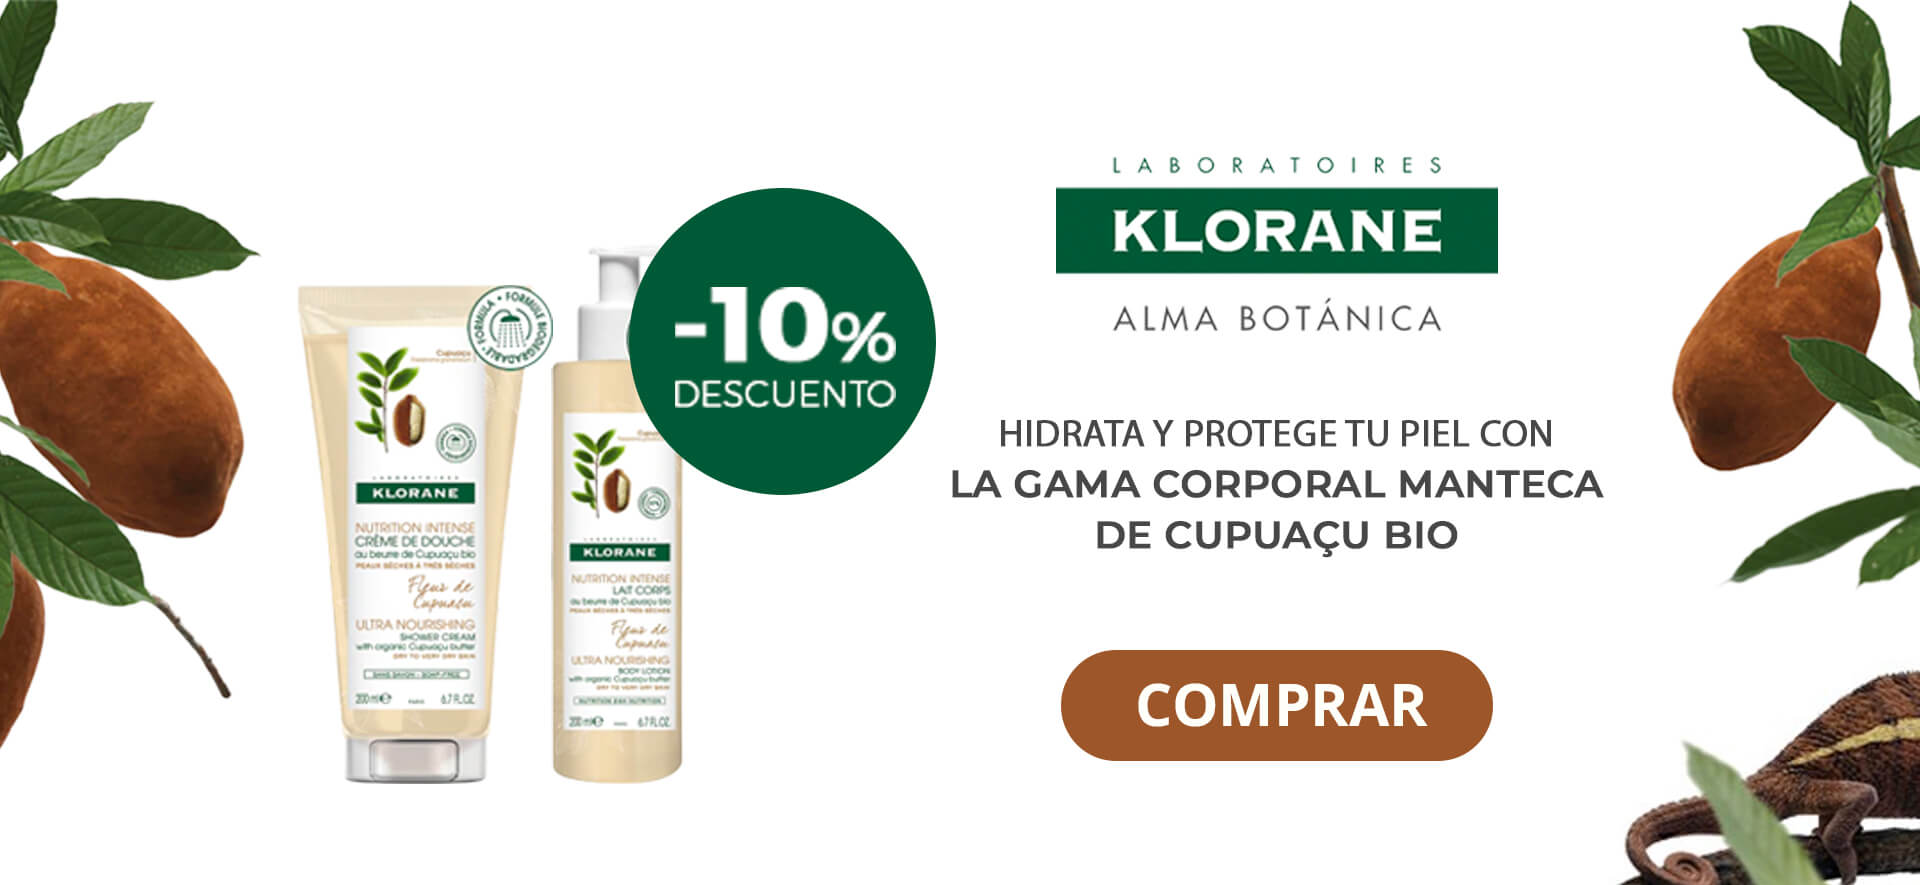 -10% descuento en productos corporales Klorane